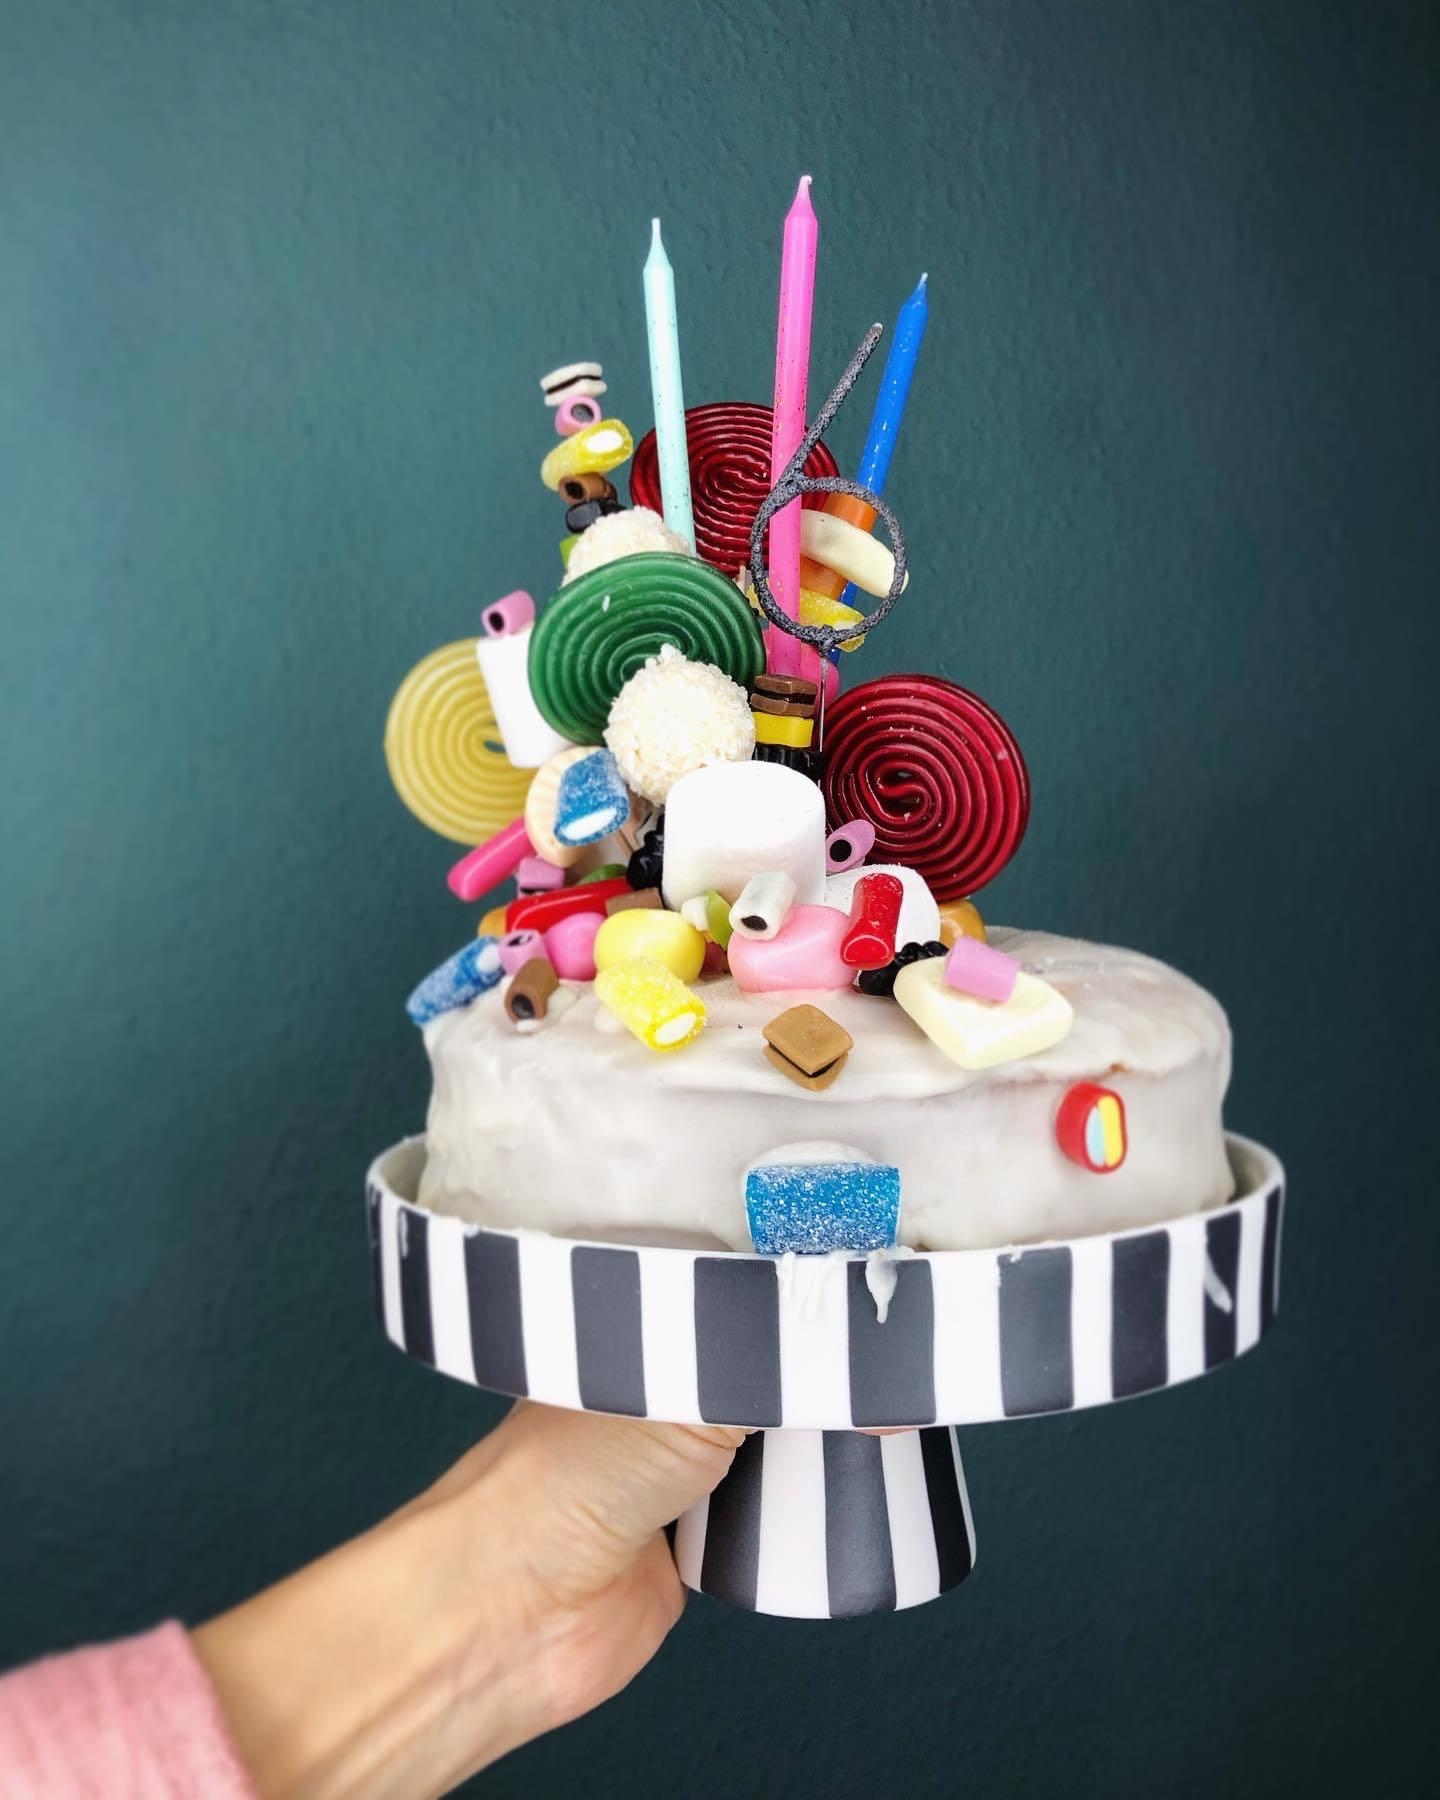 #candycake #birthdaycake #colorful
#kuchen #poppy
